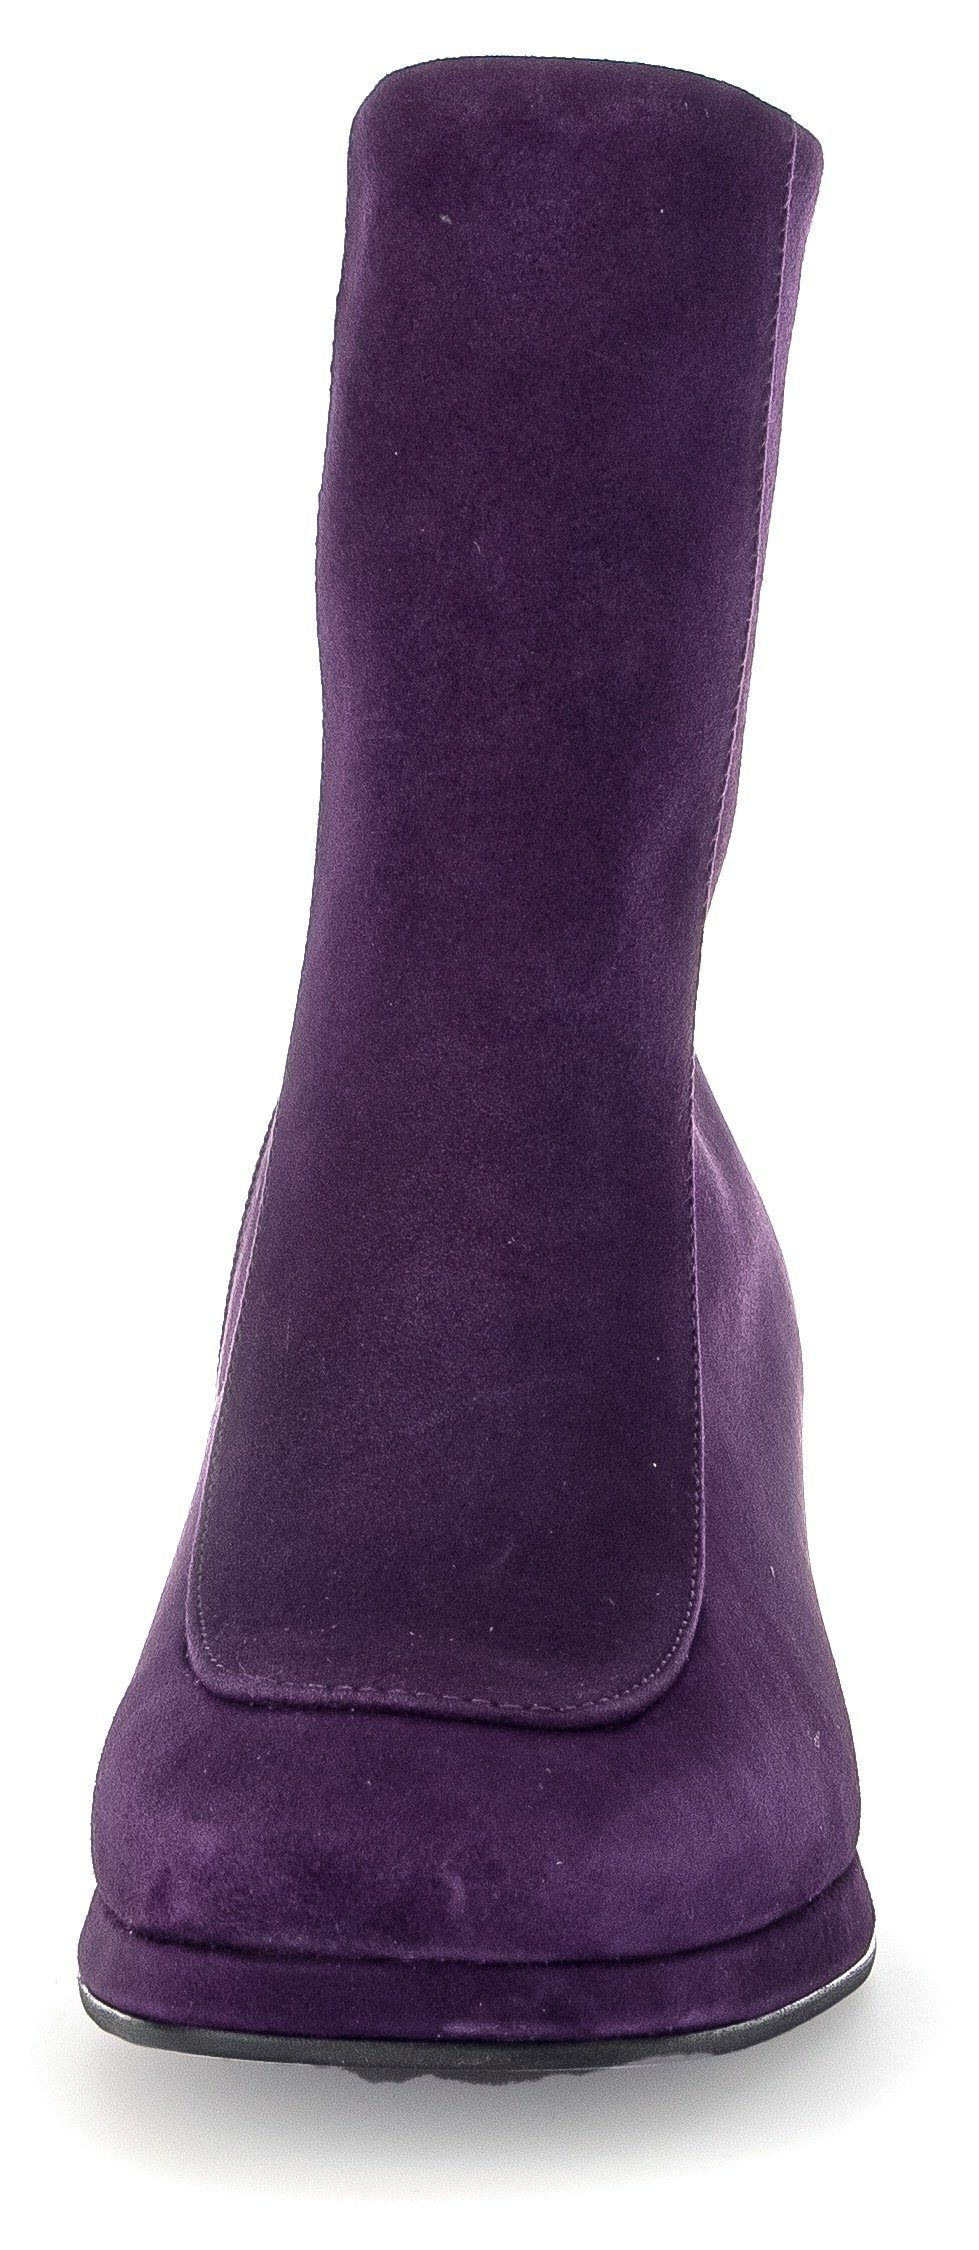 Gabor Milano Stiefelette in lila Karreeform, Weite trendiger G